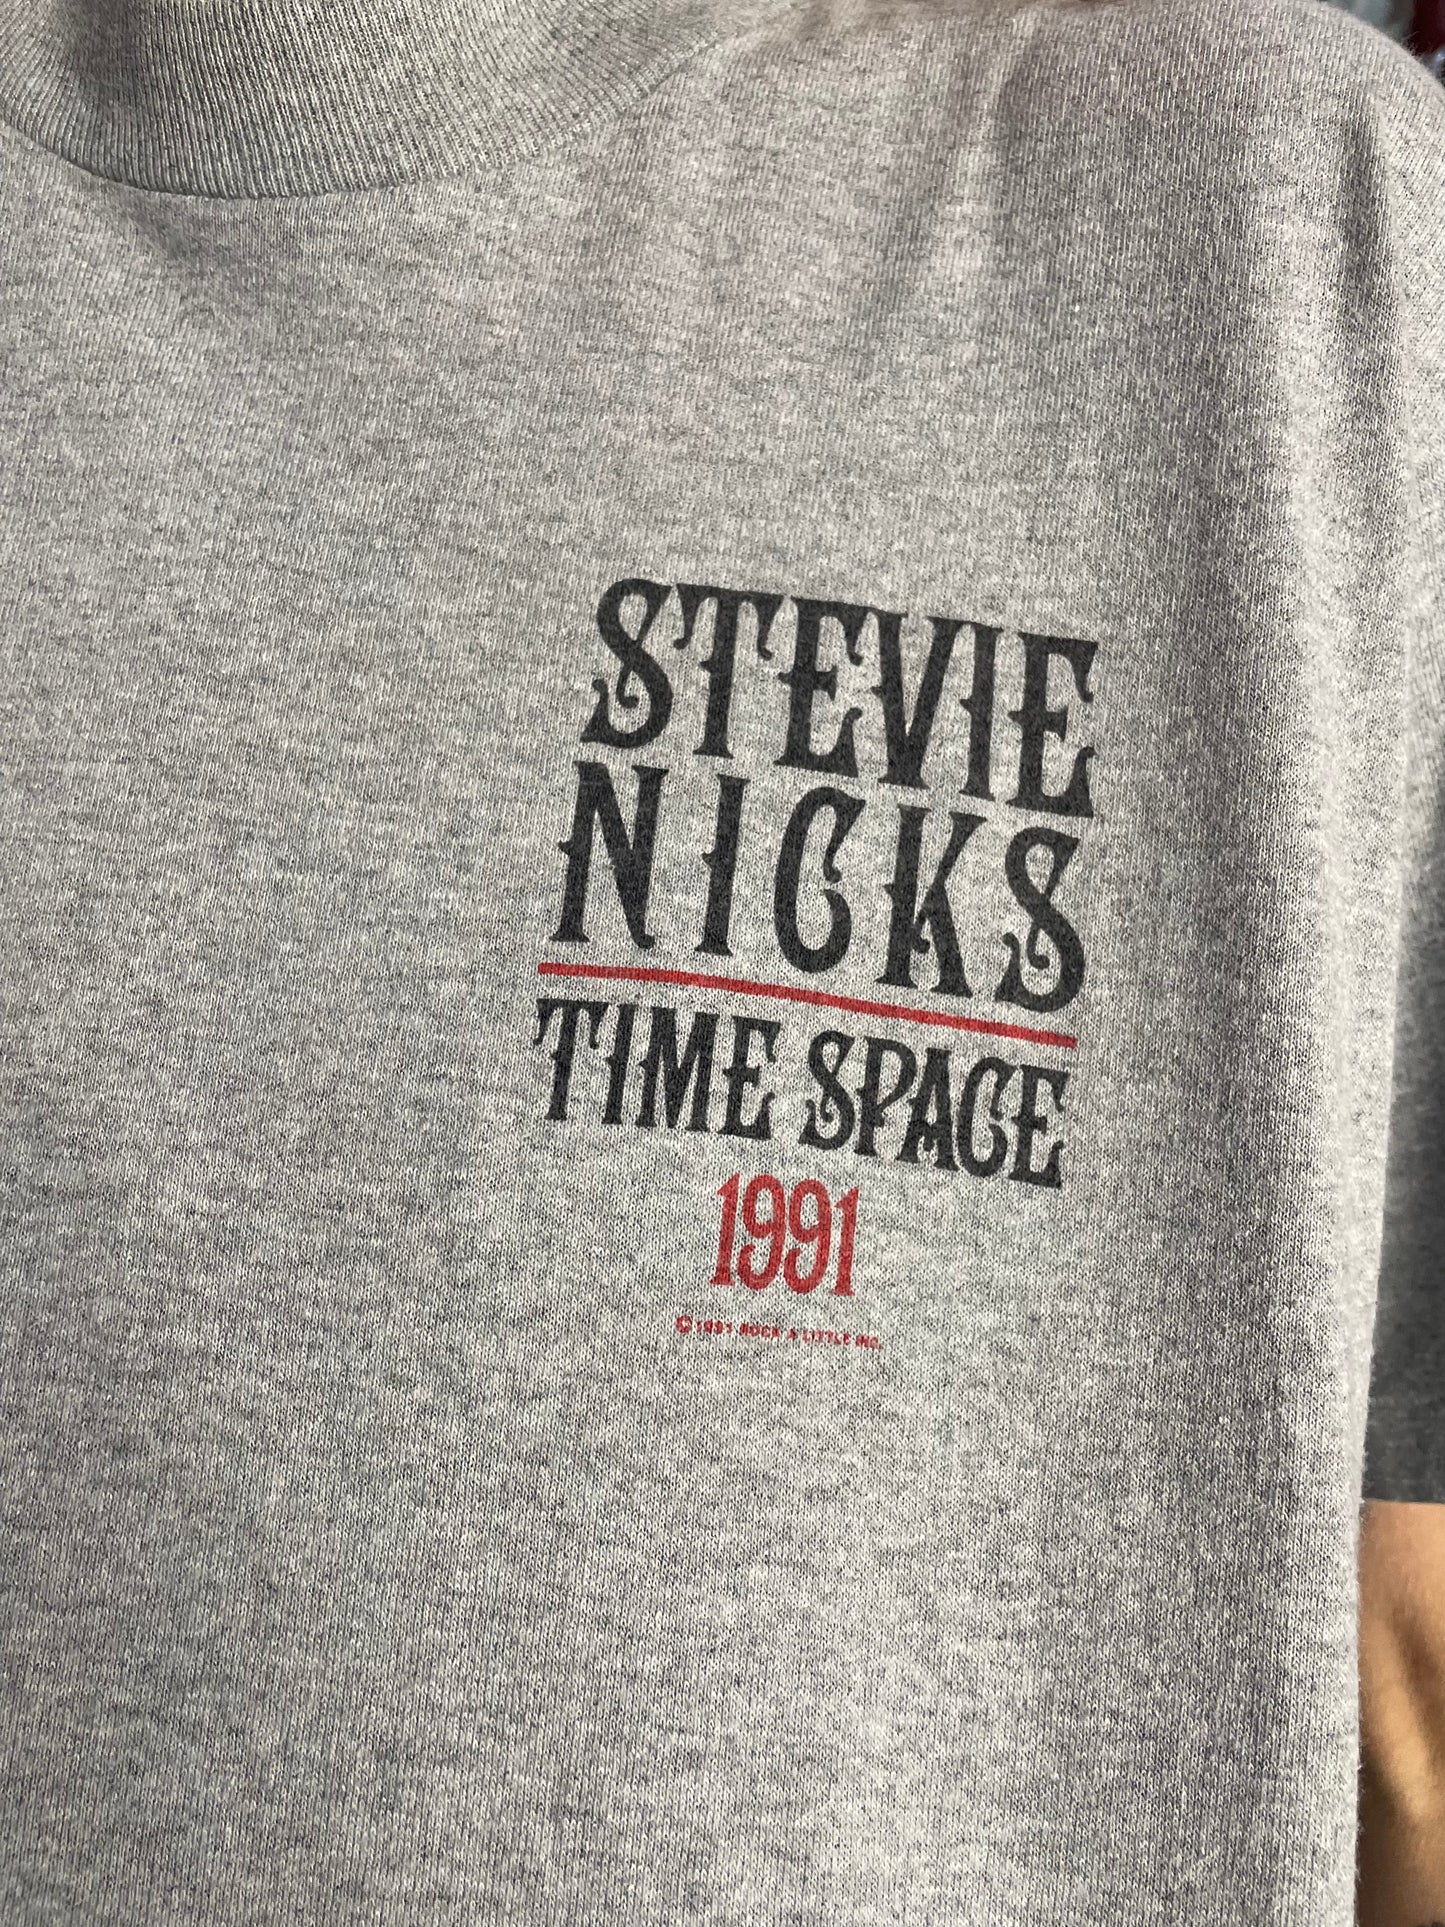 Vintage 90’s Stevie nicks concert T-Shirt